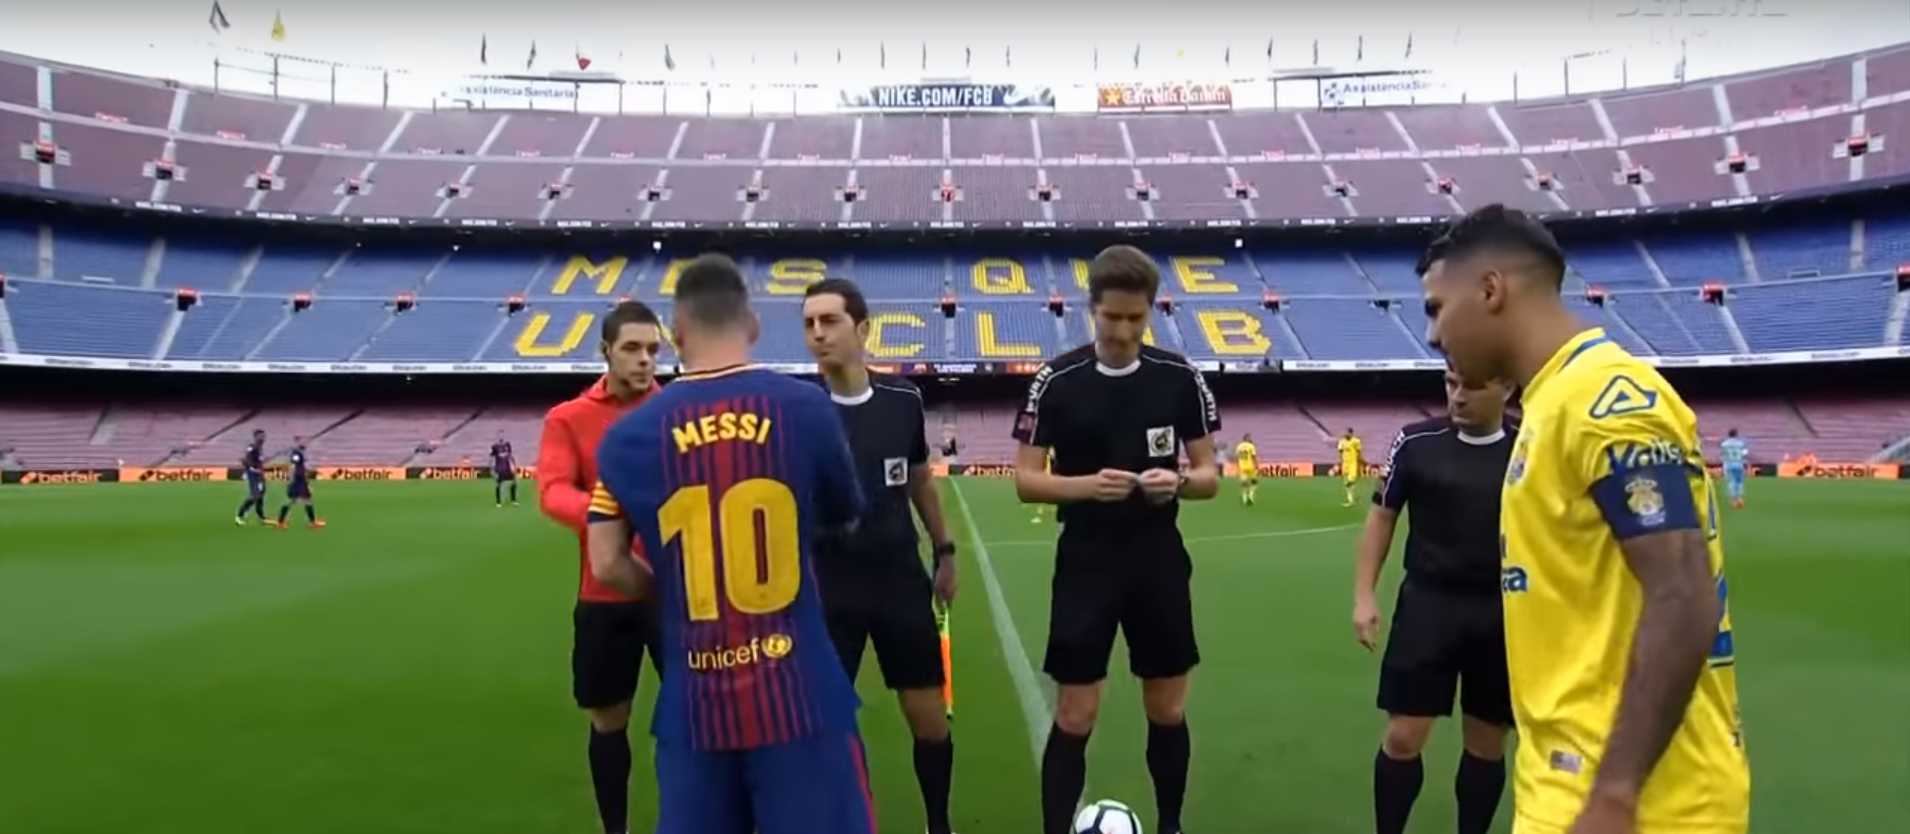 Stadion FC Barcelona Camp Nou zel prázdnotou (YouTube)